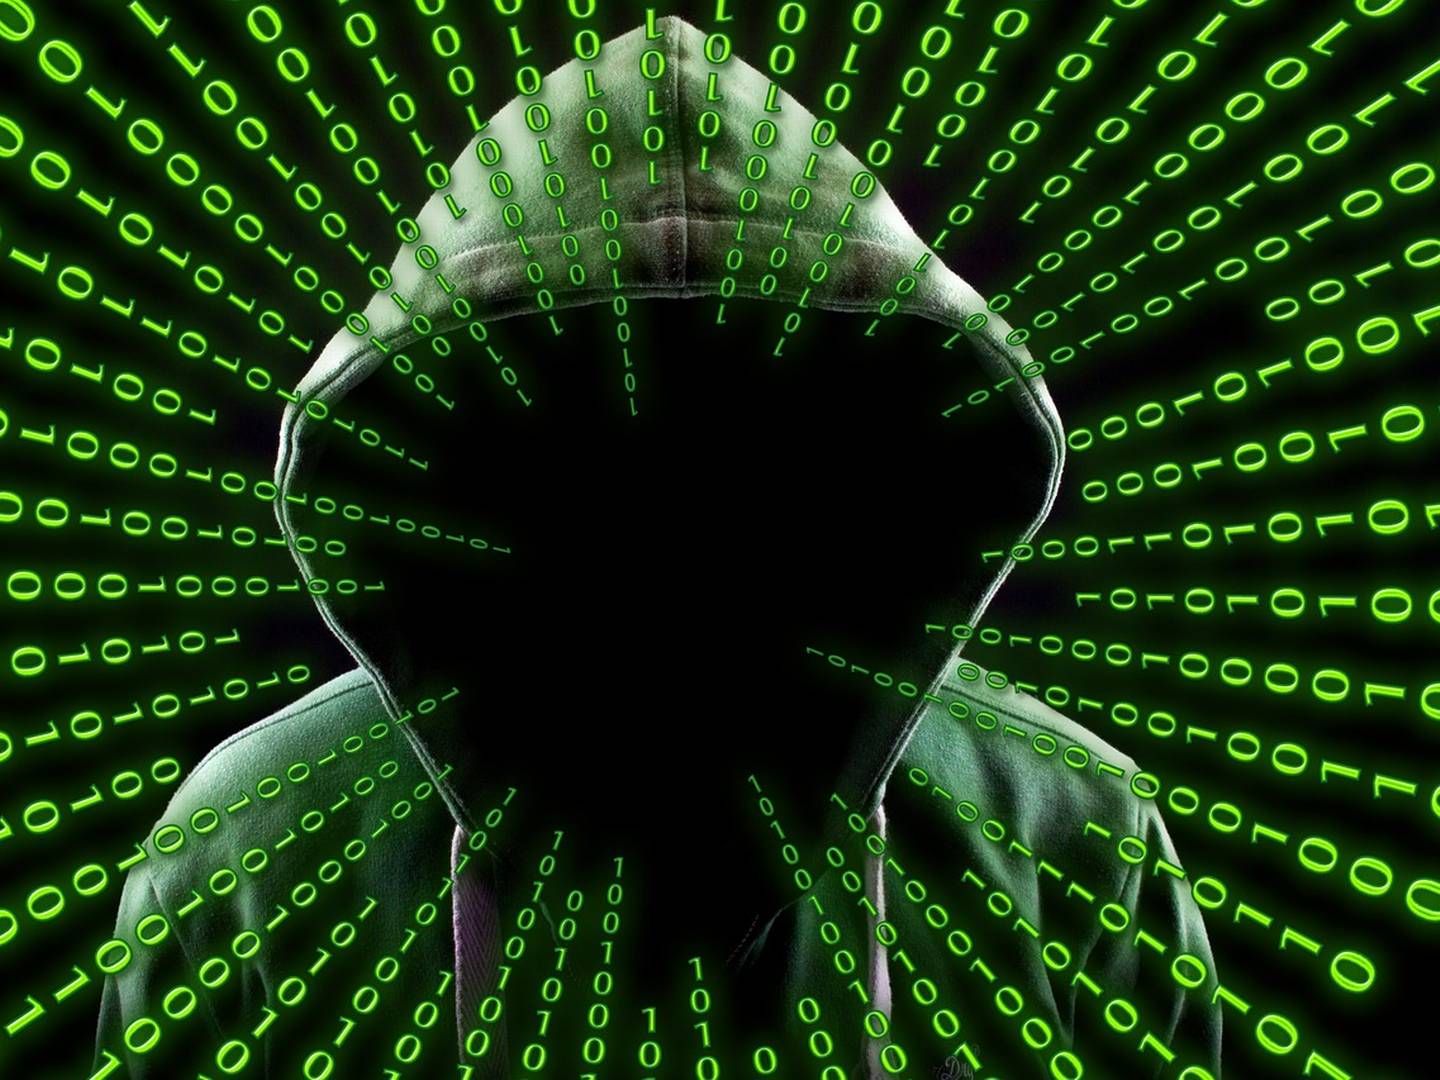 Die Zahl der Attacken auf Banken-IT-Systeme nimmt weiter zu. | Foto: geralt/pixabay